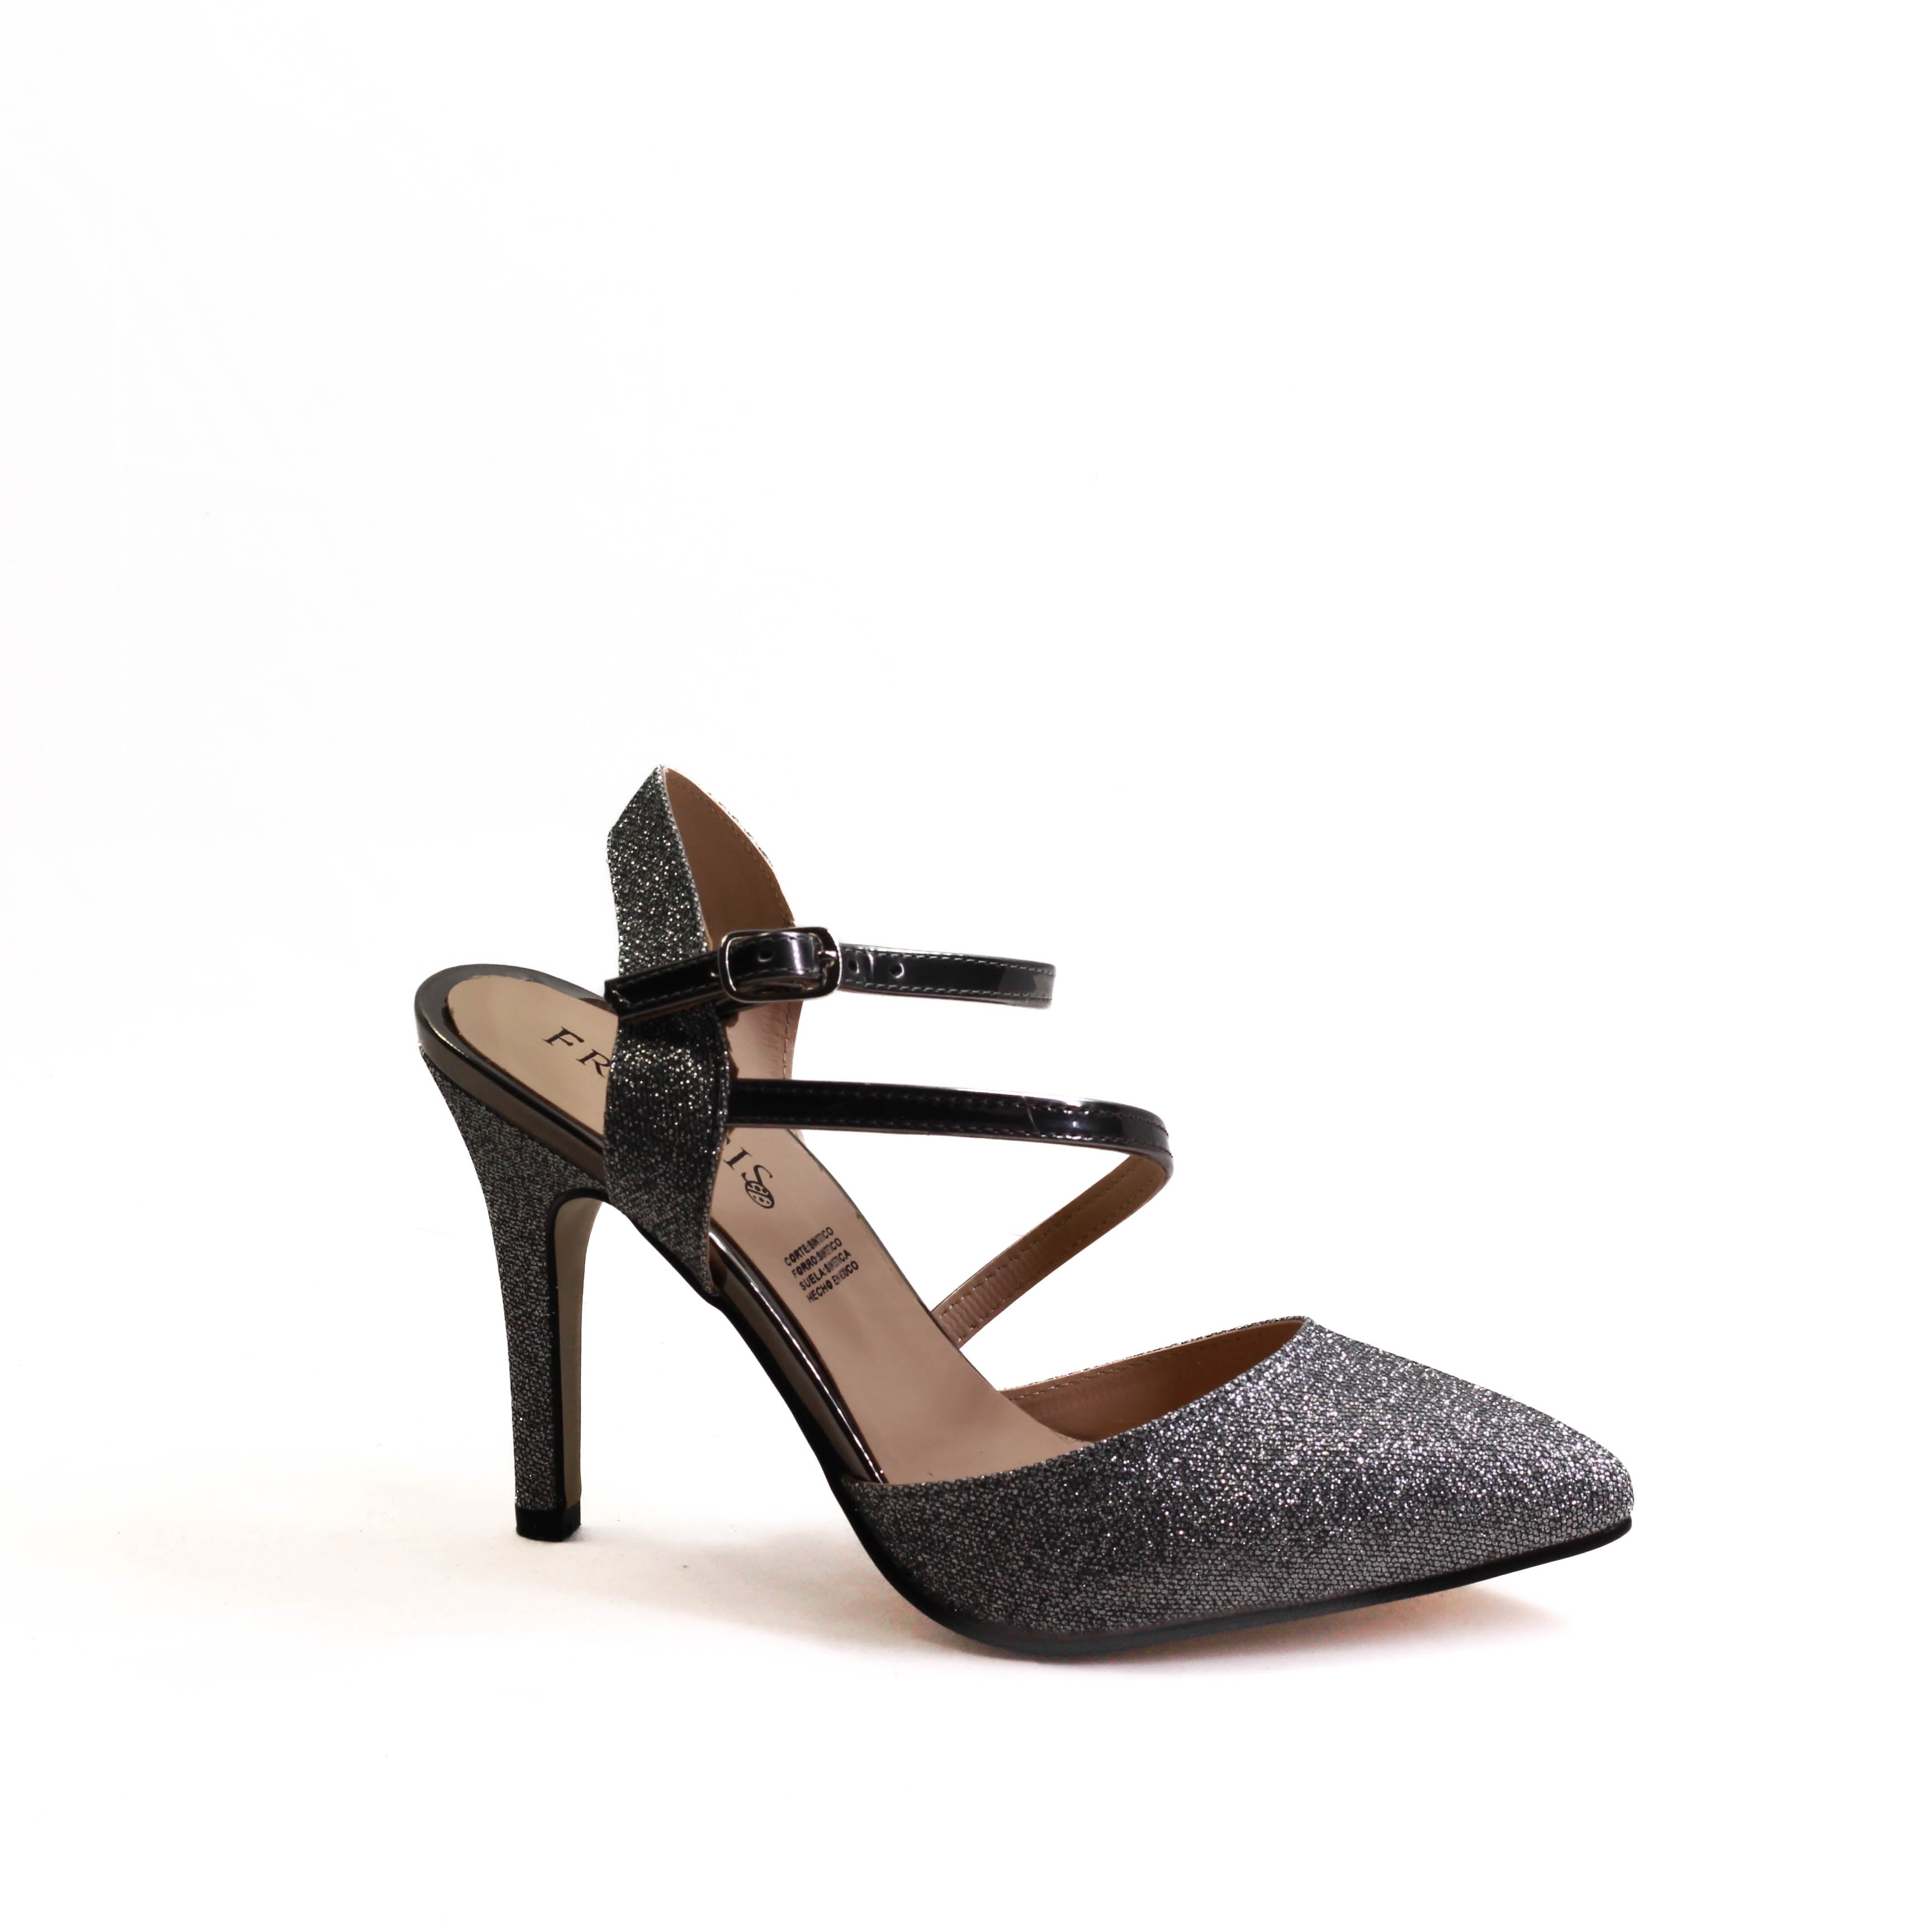 Zapatillas de Glitter con Tira Diagonal: Elegancia Deslumbrante para Tus Outfits Glamorosos